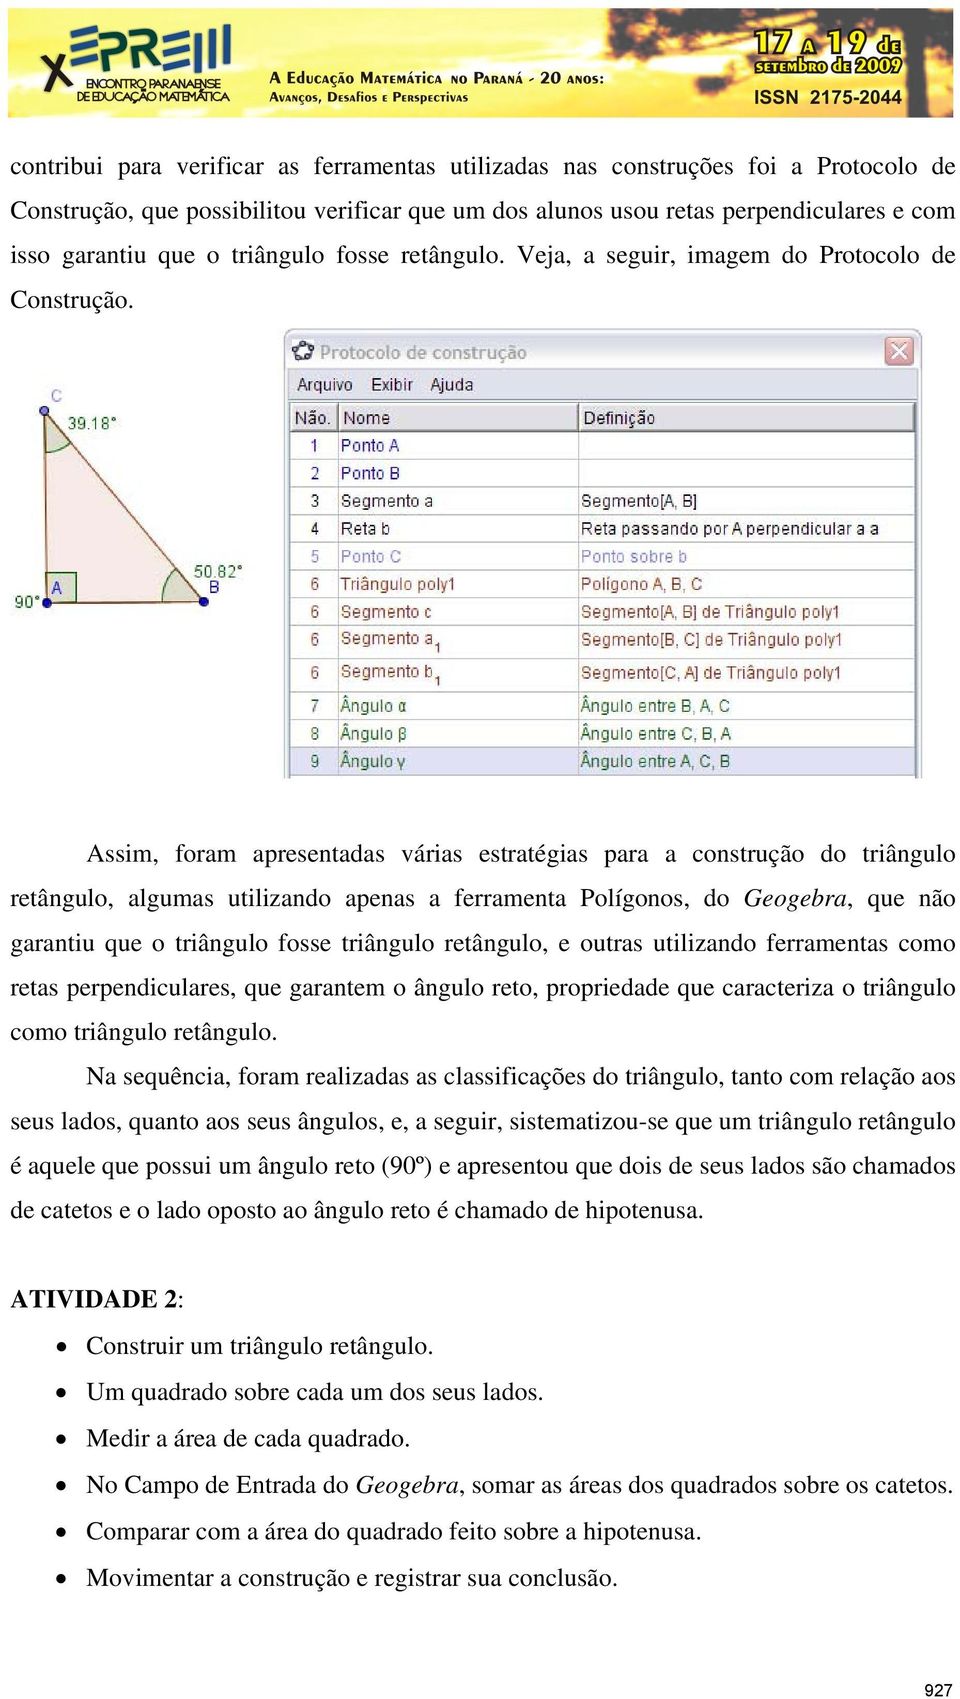 Assim, foram apresentadas várias estratégias para a construção do triângulo retângulo, algumas utilizando apenas a ferramenta Polígonos, do Geogebra, que não garantiu que o triângulo fosse triângulo